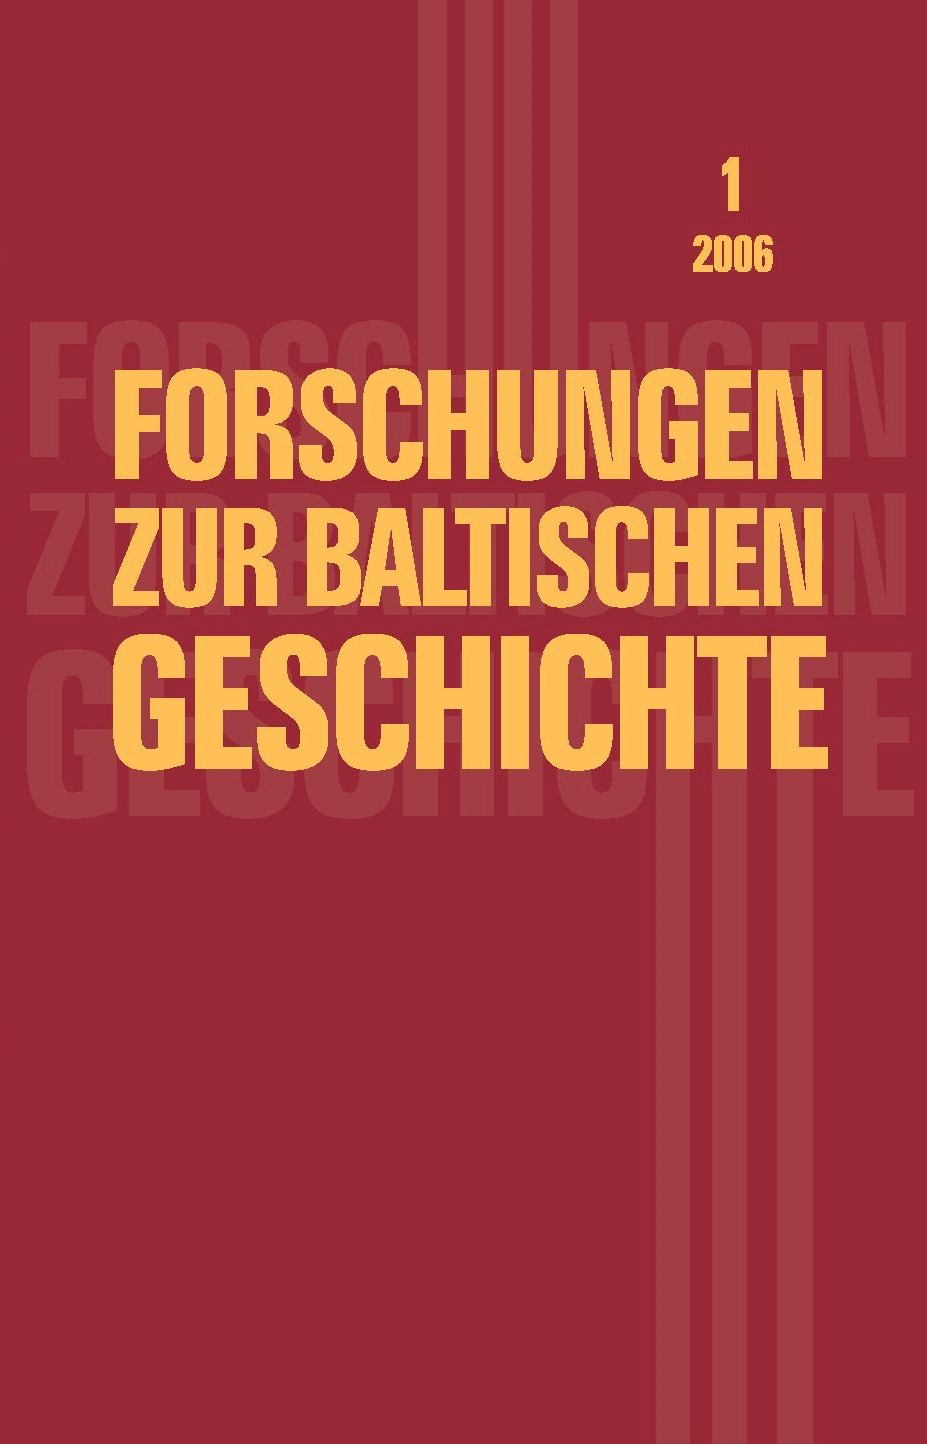 Forschungen zur baltischen Geschichte, Band 1, 2016